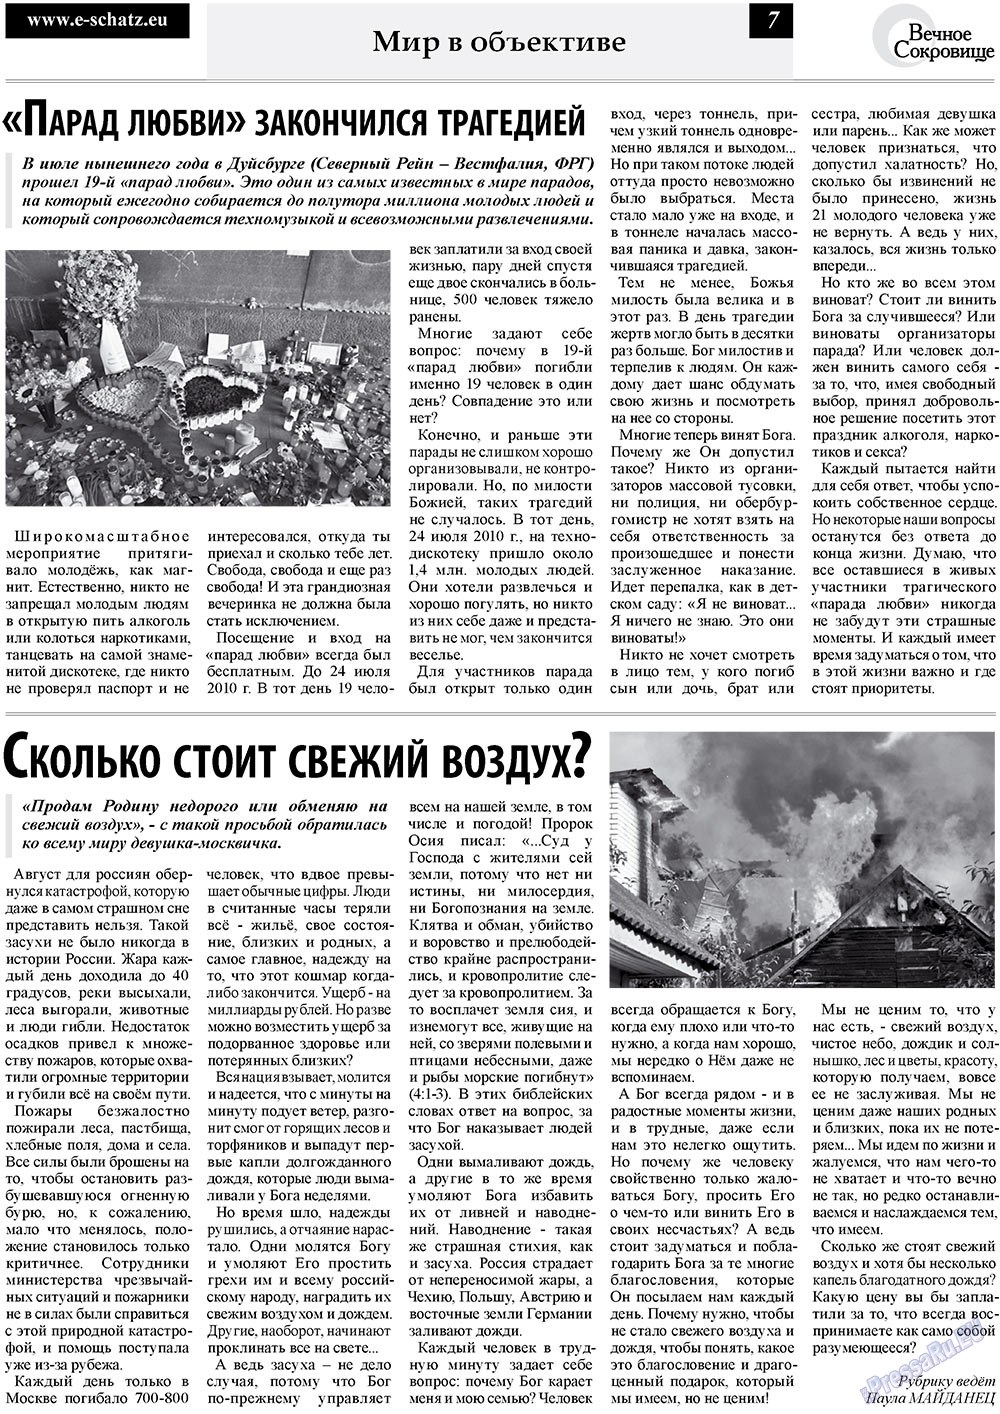 Вечное сокровище, газета. 2010 №3 стр.7